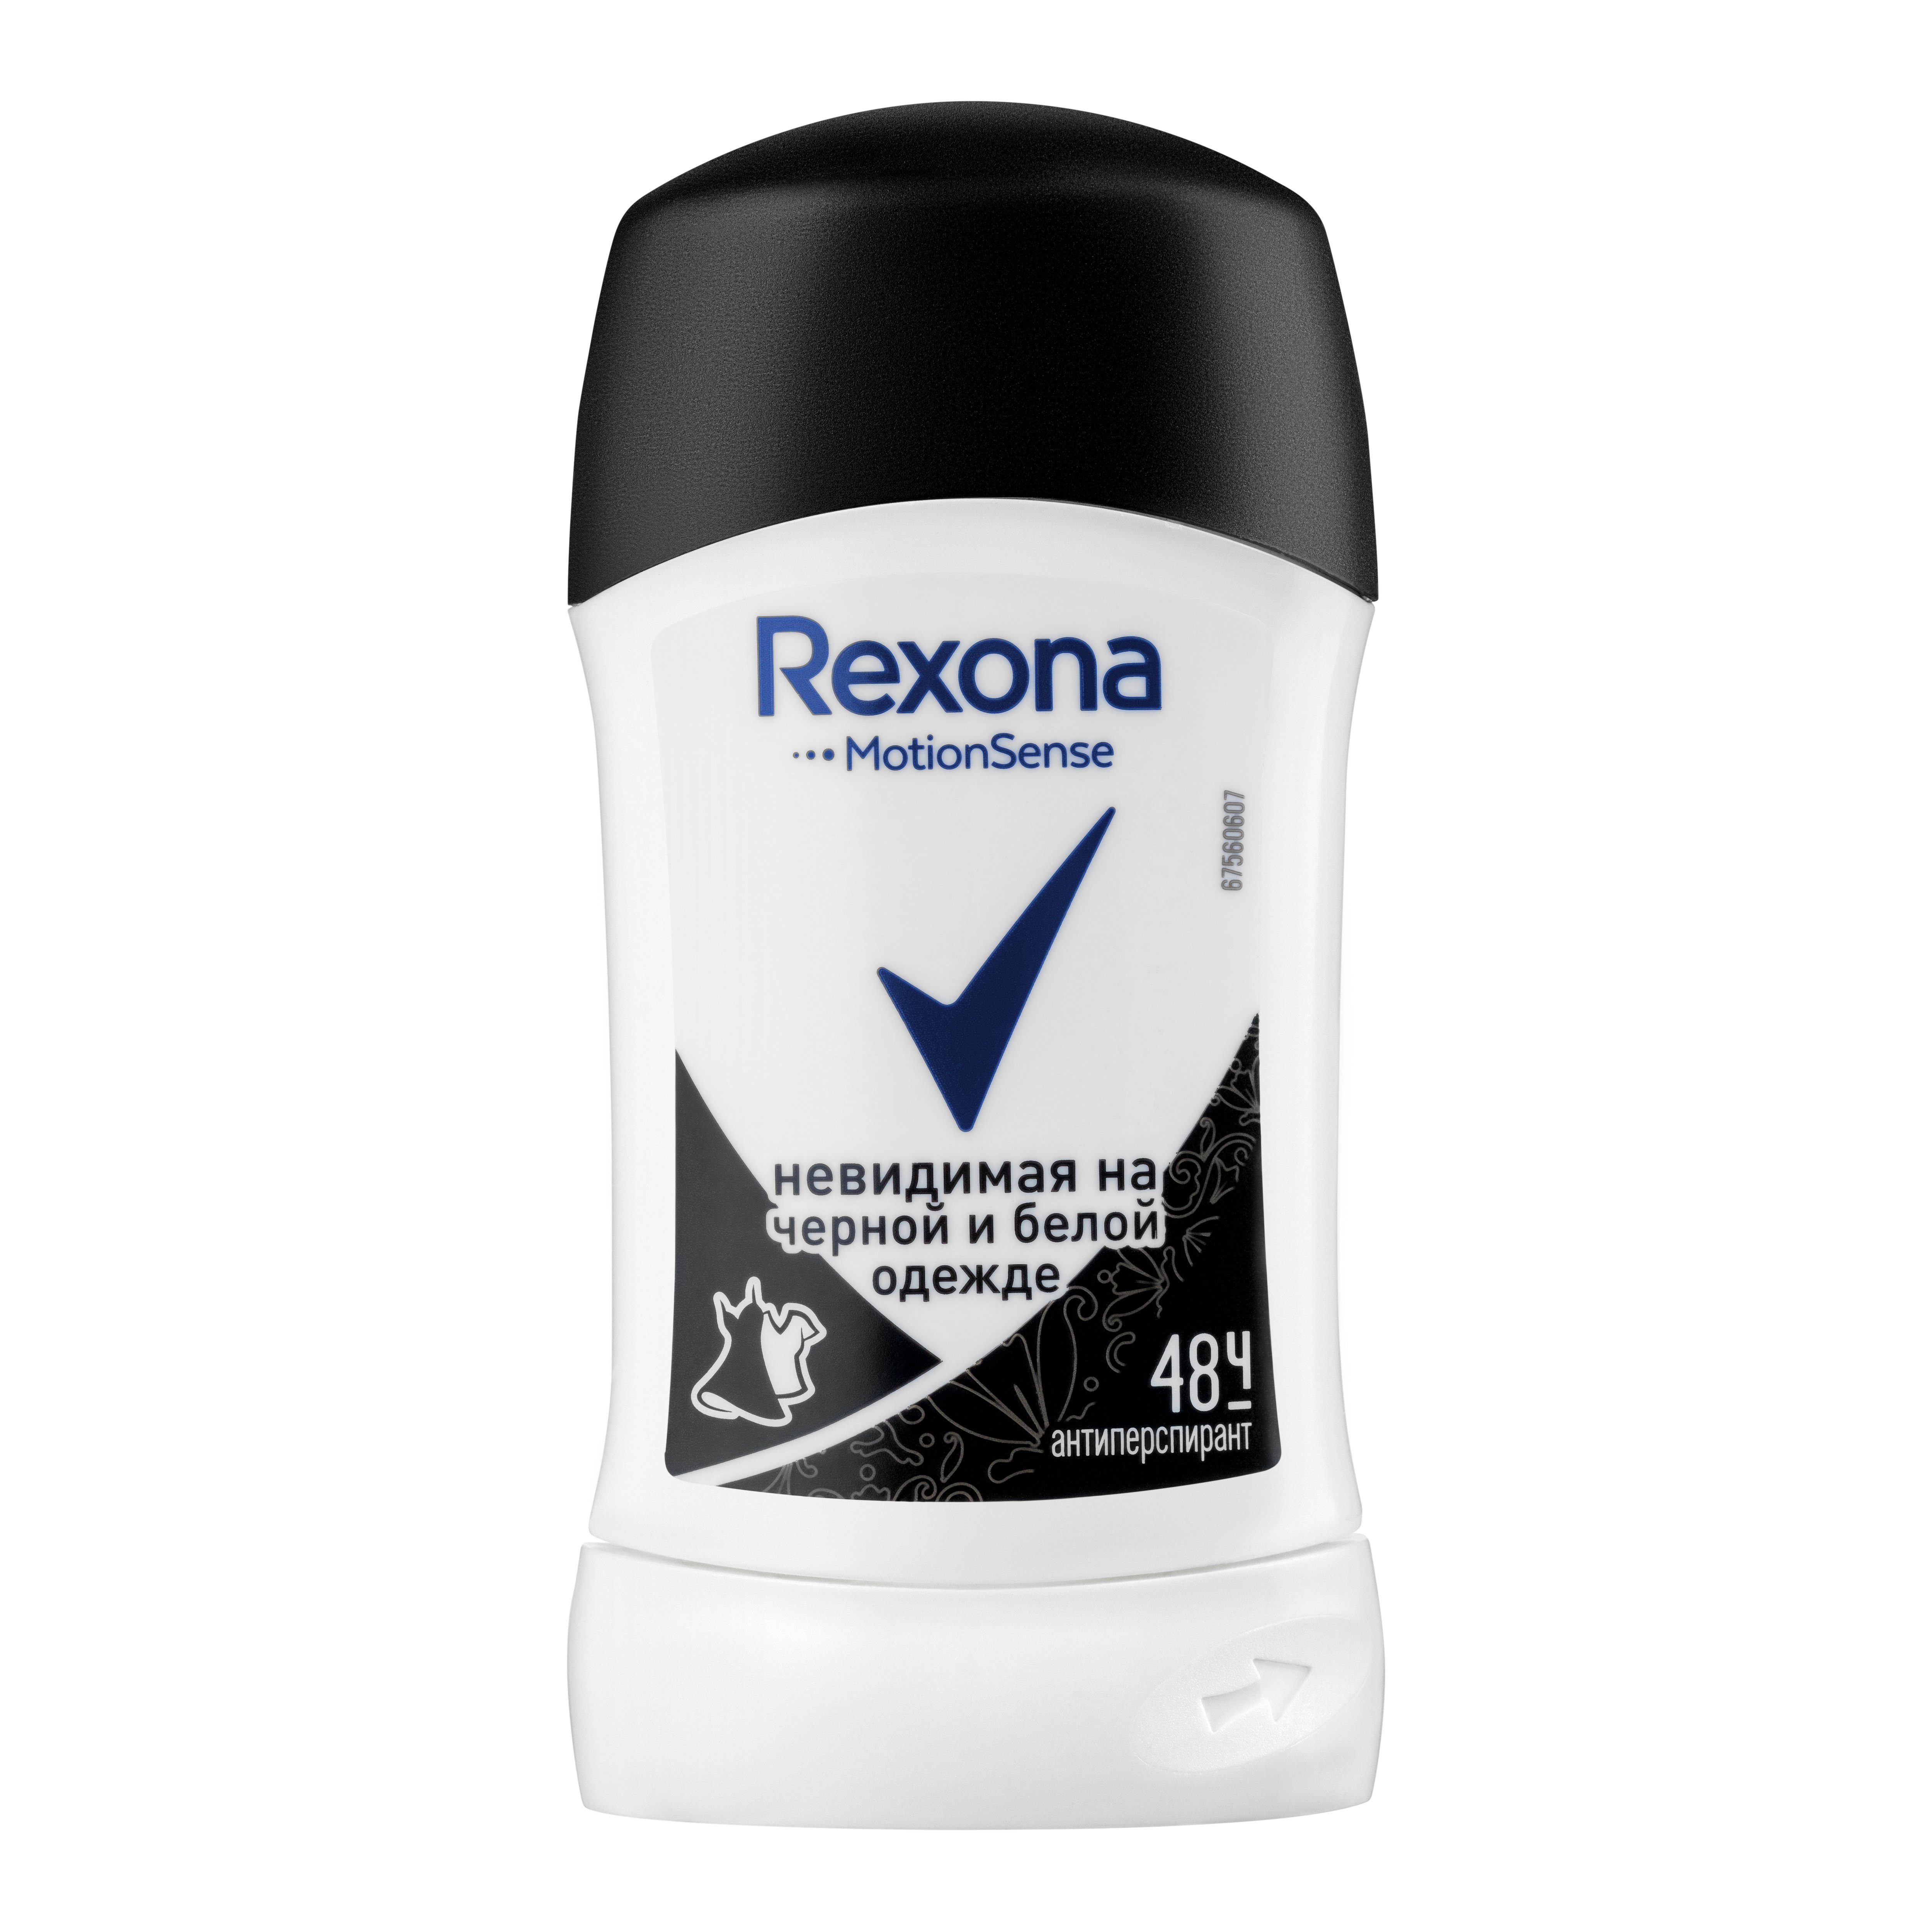 Дезодорант-антиперспирант Rexona Невидимый на черном и белом, 40 мл - фото 1